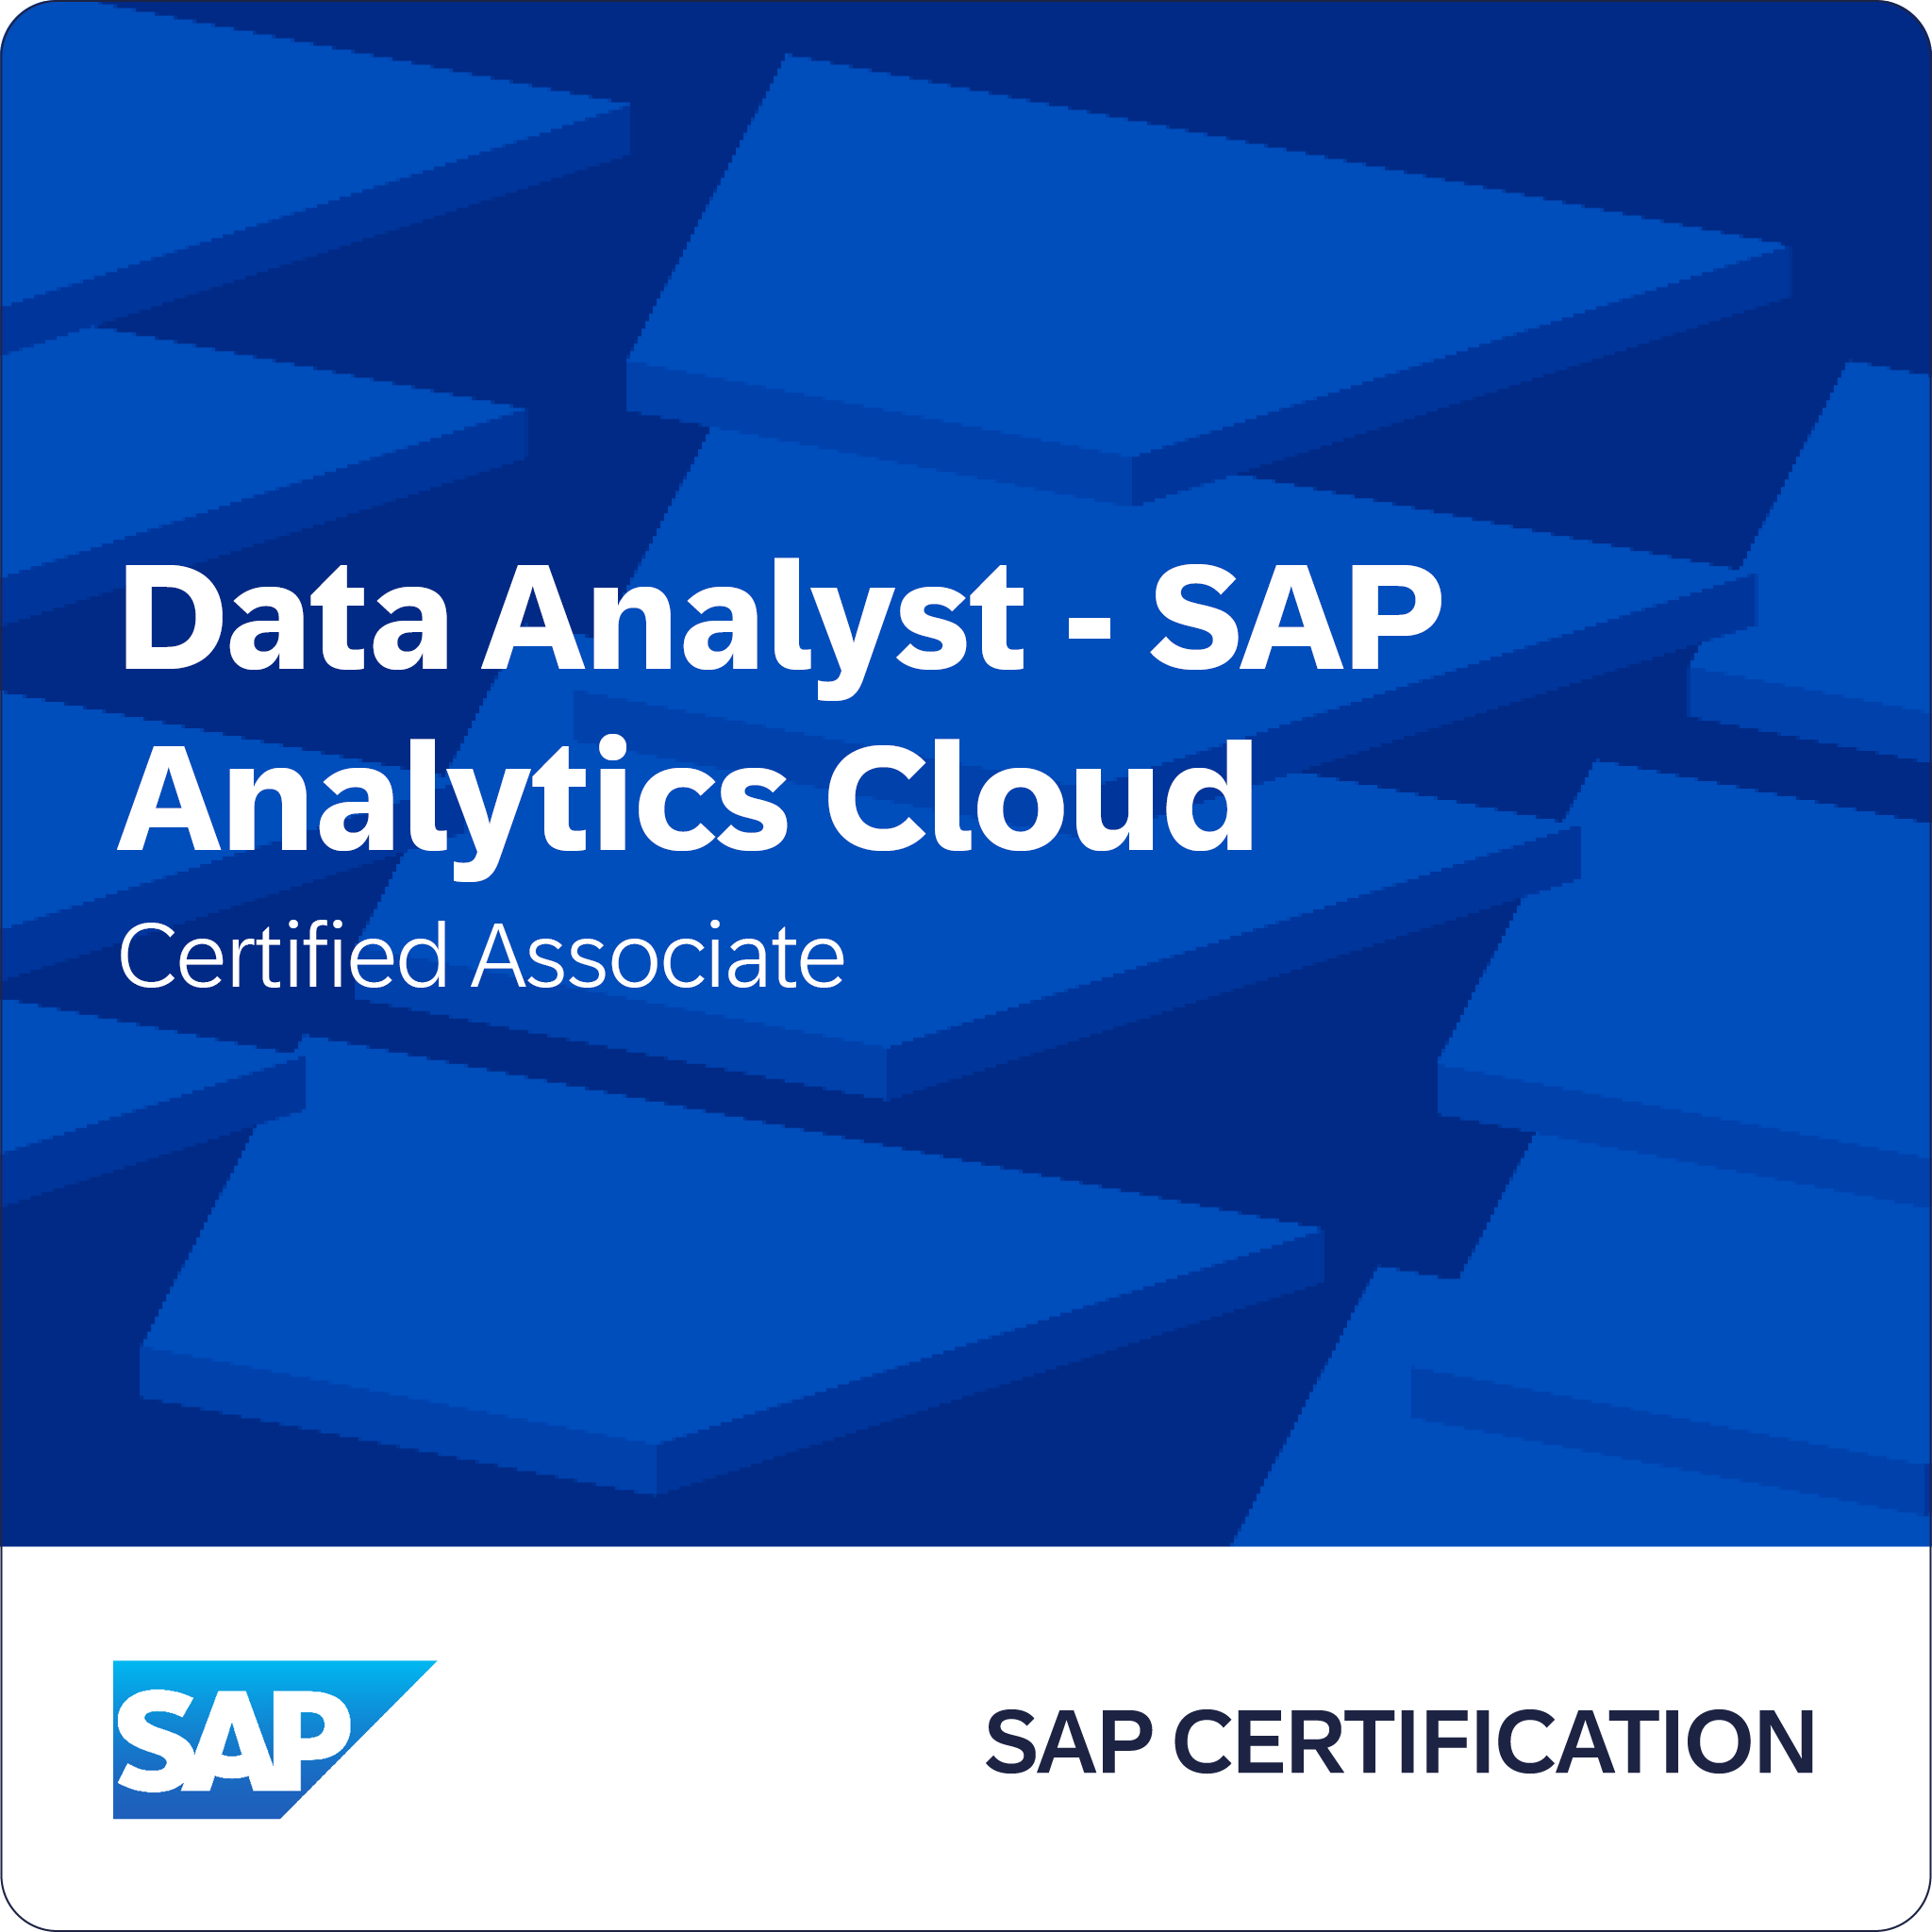 SAP Certified Associate – Data Analyst - SAP Analytics Cloud